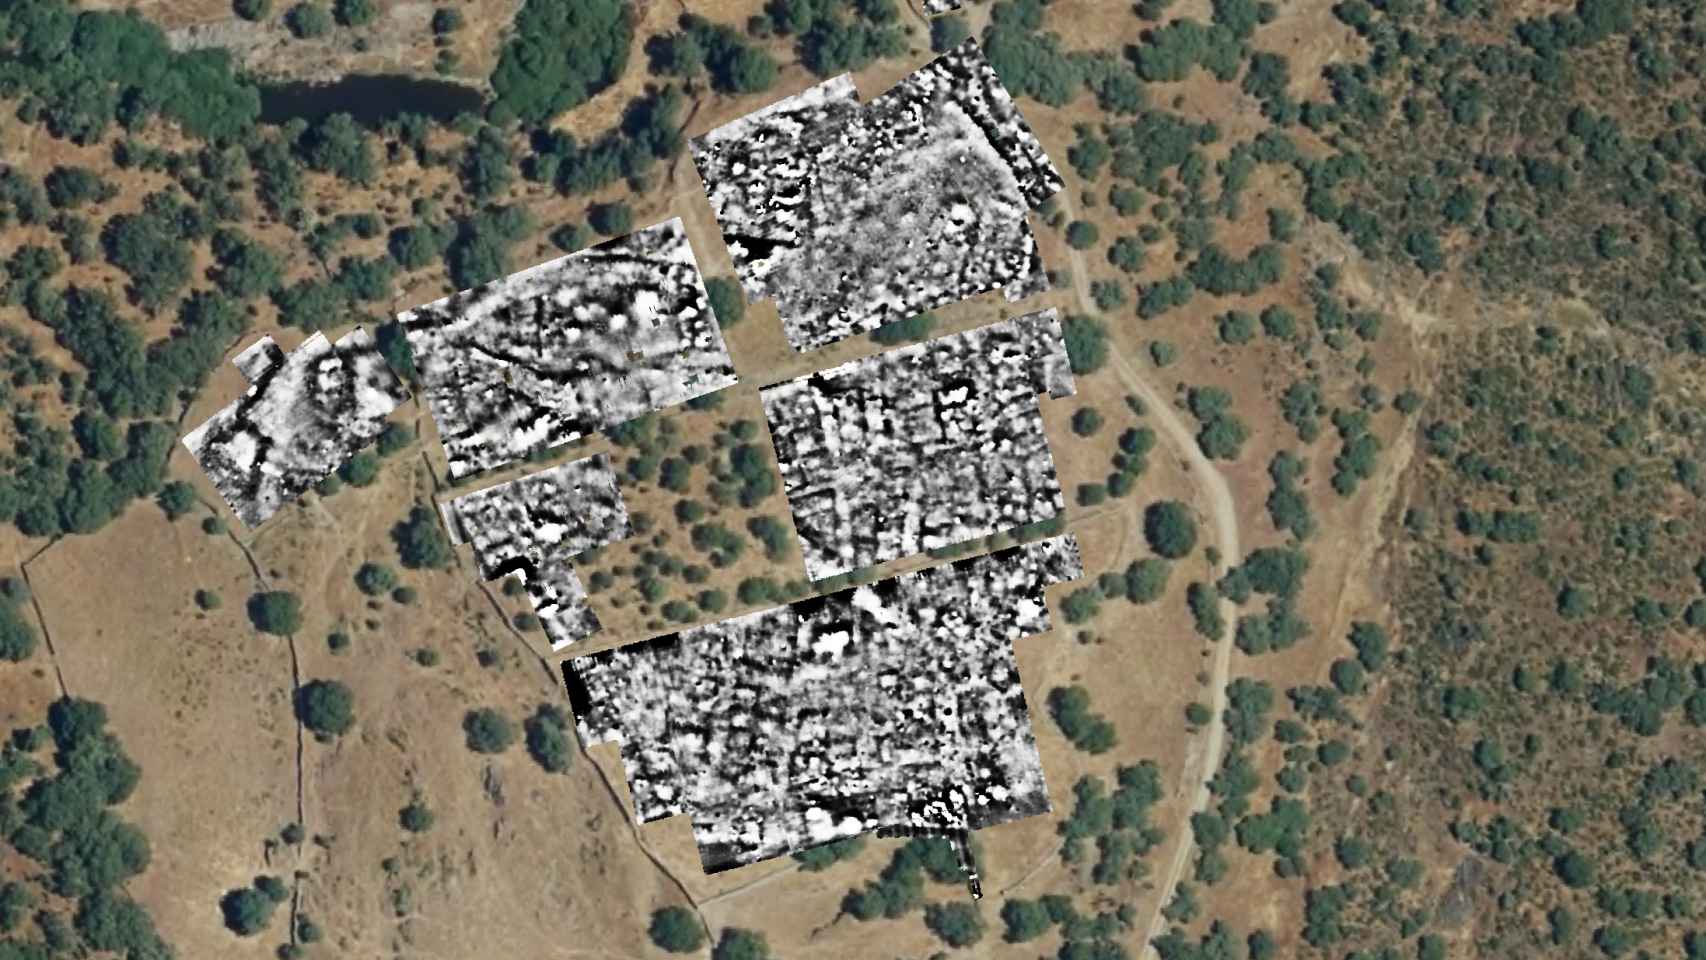 Parte sur del asentamiento, donde se encuentra la base militar romana, radiografiada con los métodos geofísicos.